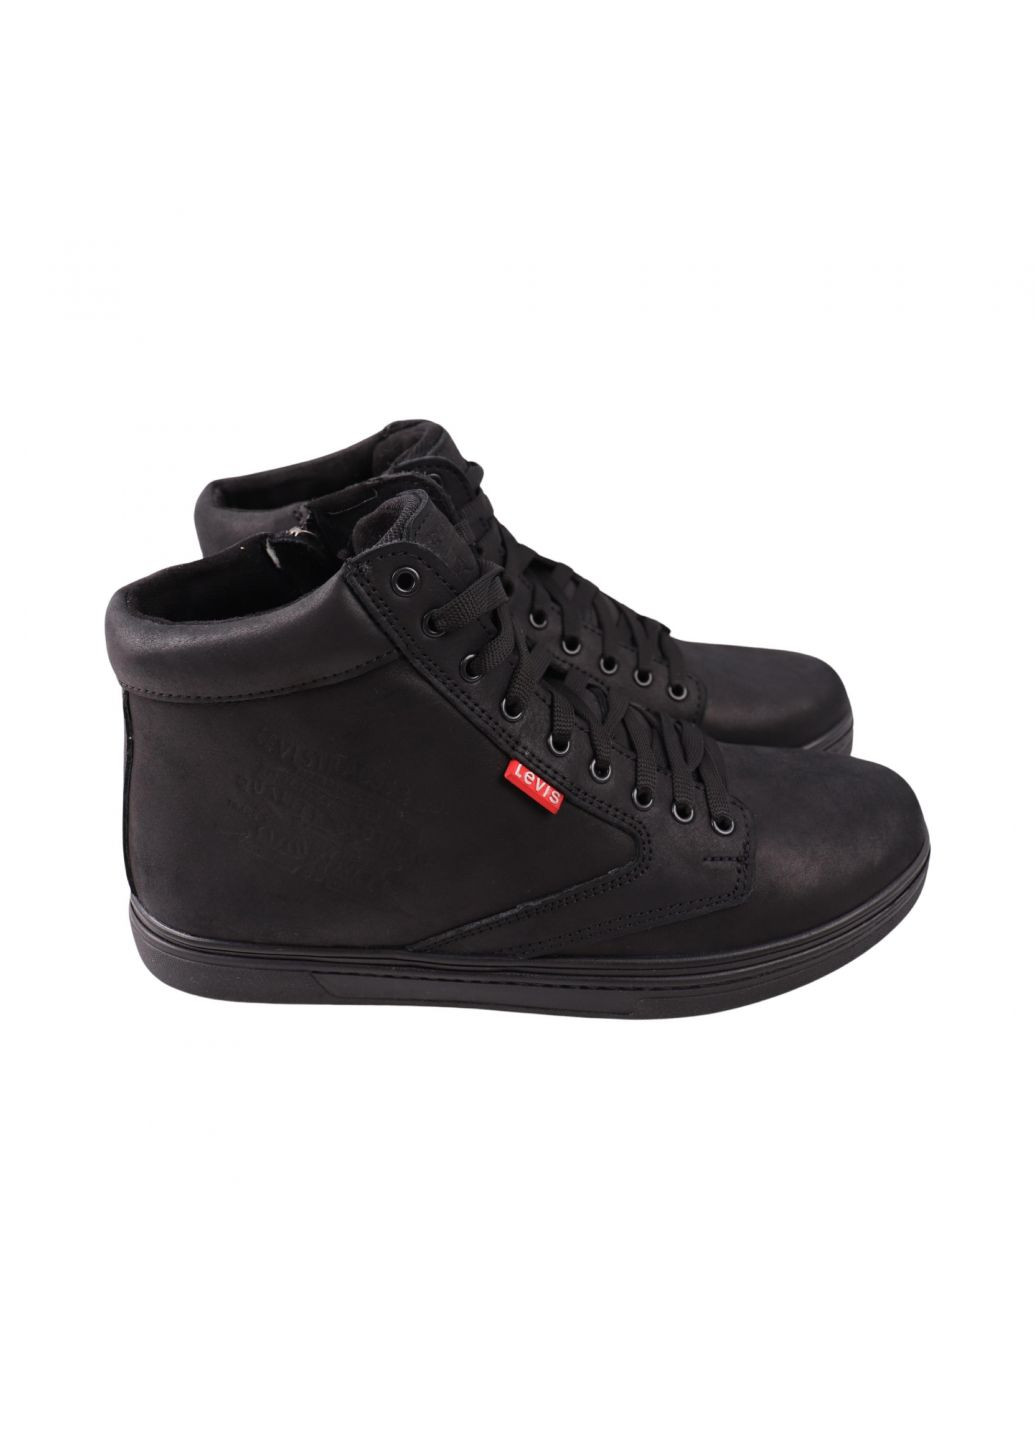 Черные ботинки мужские maxus черные натуральная кожа Maxus Shoes